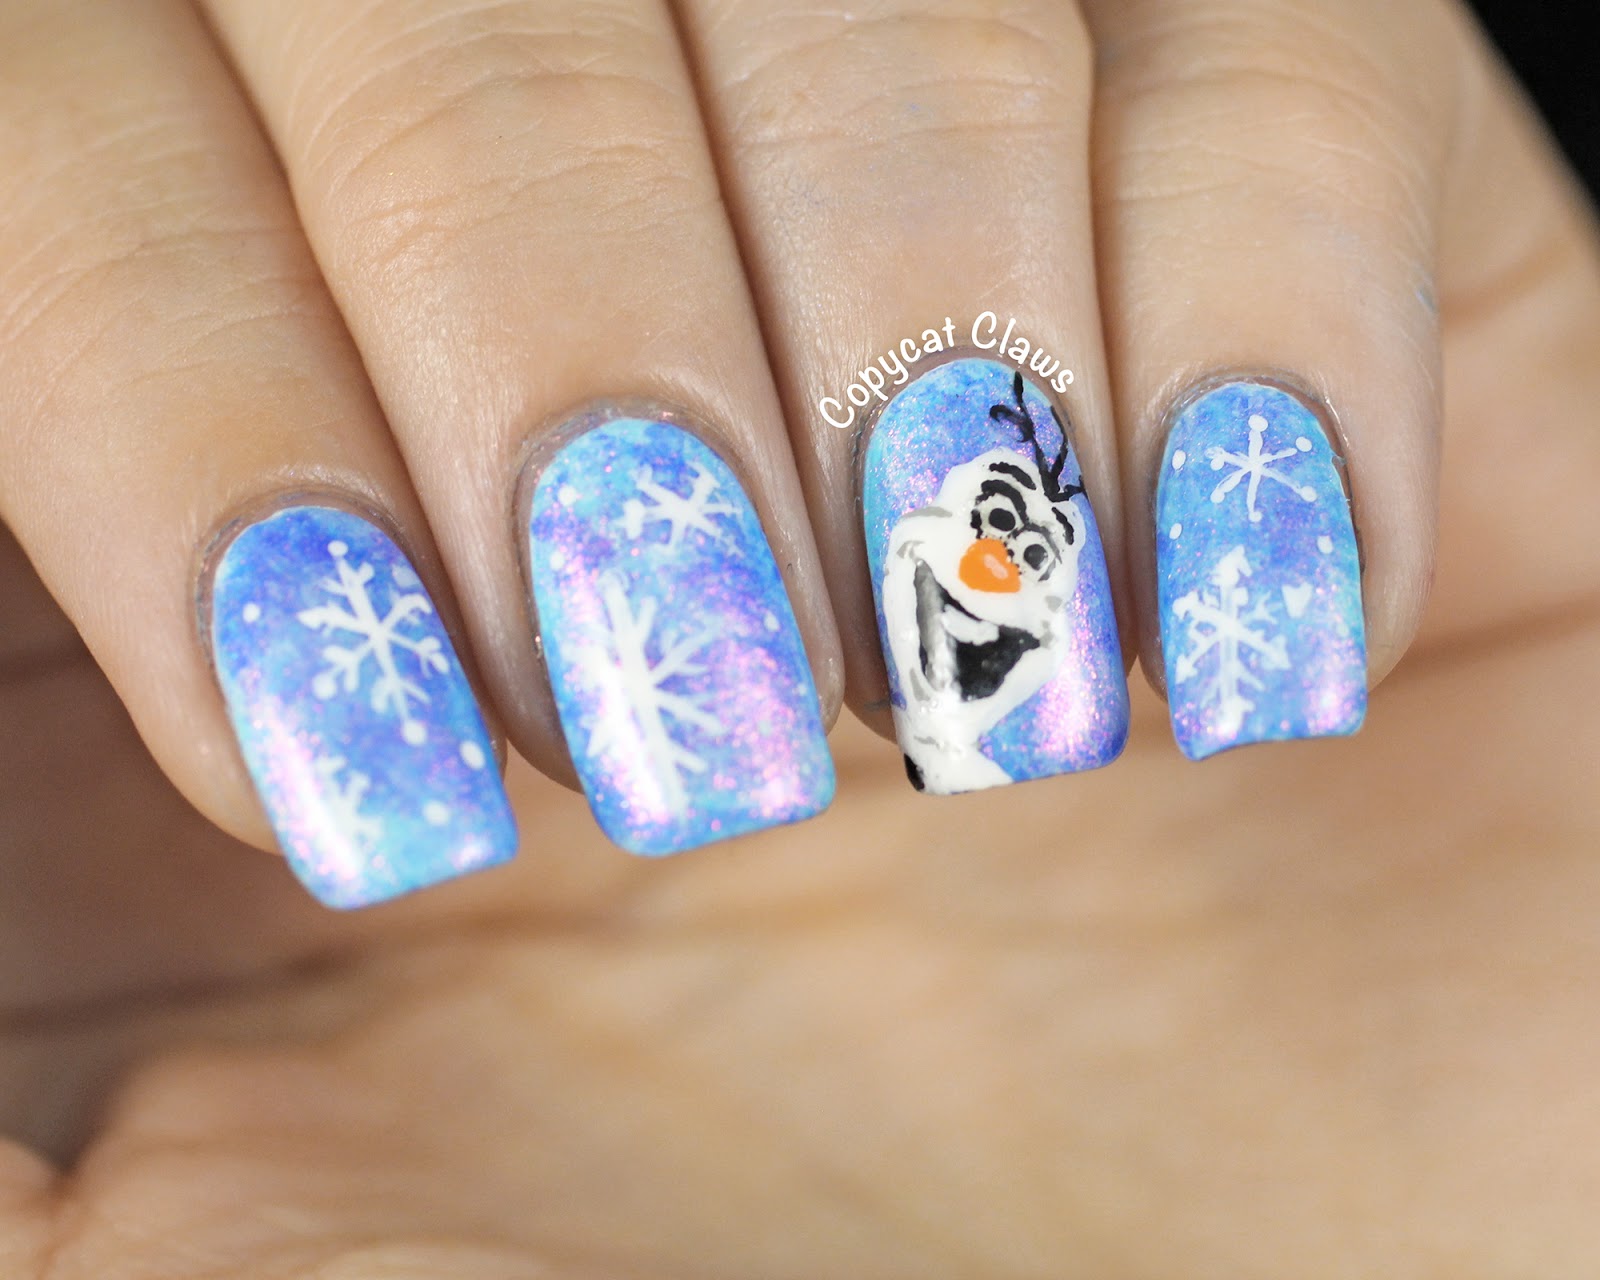 8. Glittery Frozen Nails - wide 2